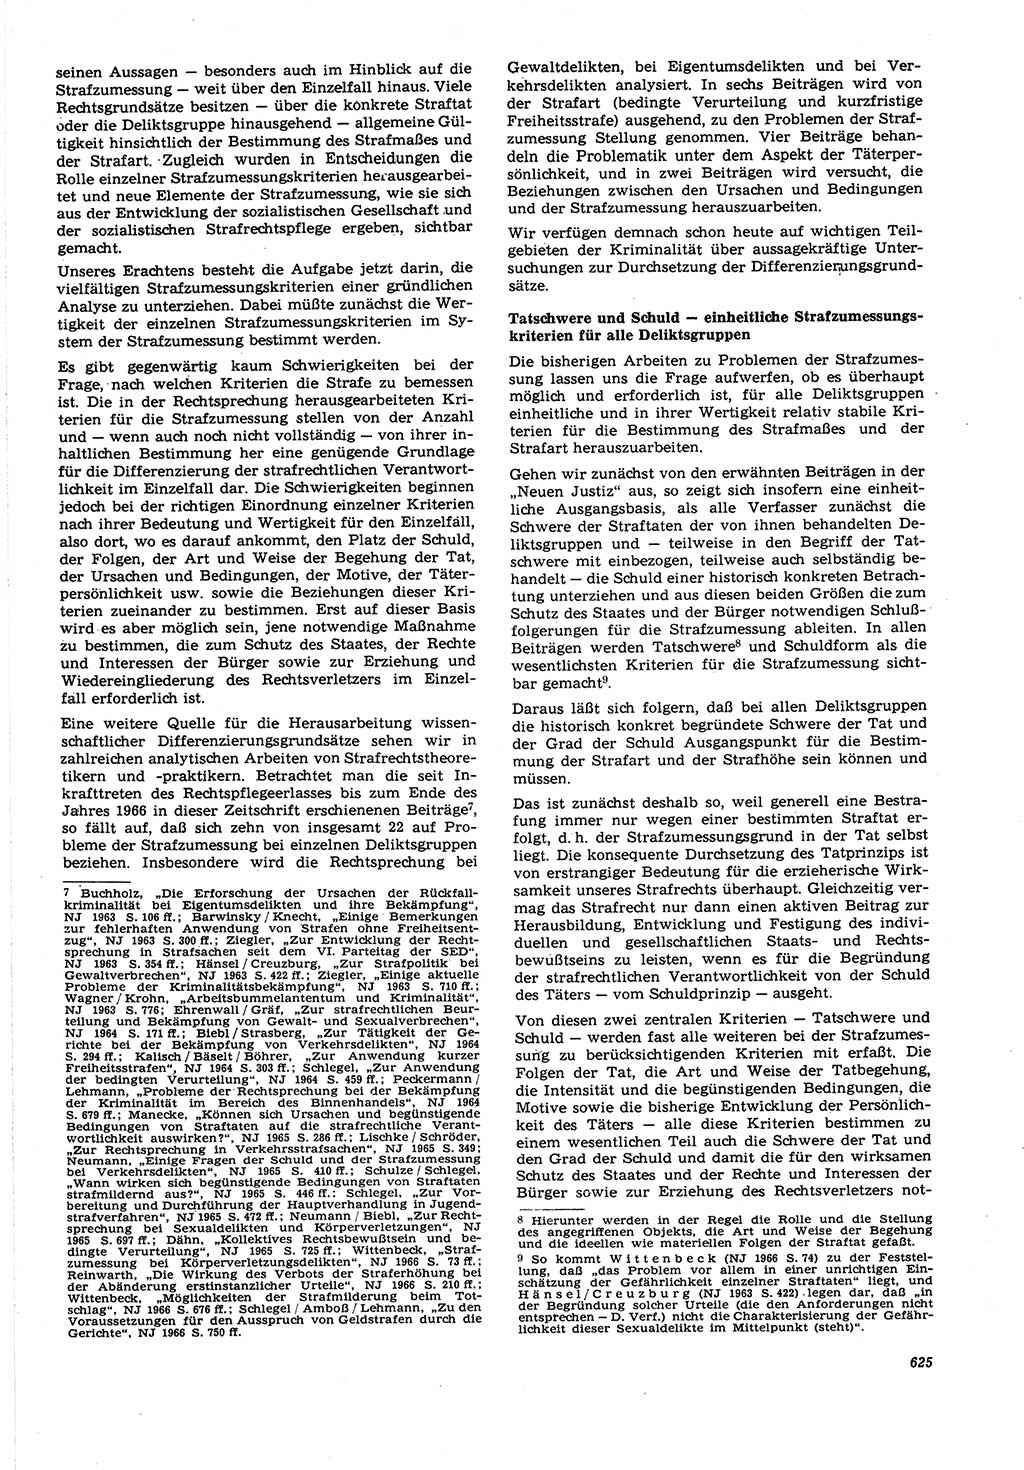 Neue Justiz (NJ), Zeitschrift für Recht und Rechtswissenschaft [Deutsche Demokratische Republik (DDR)], 21. Jahrgang 1967, Seite 625 (NJ DDR 1967, S. 625)